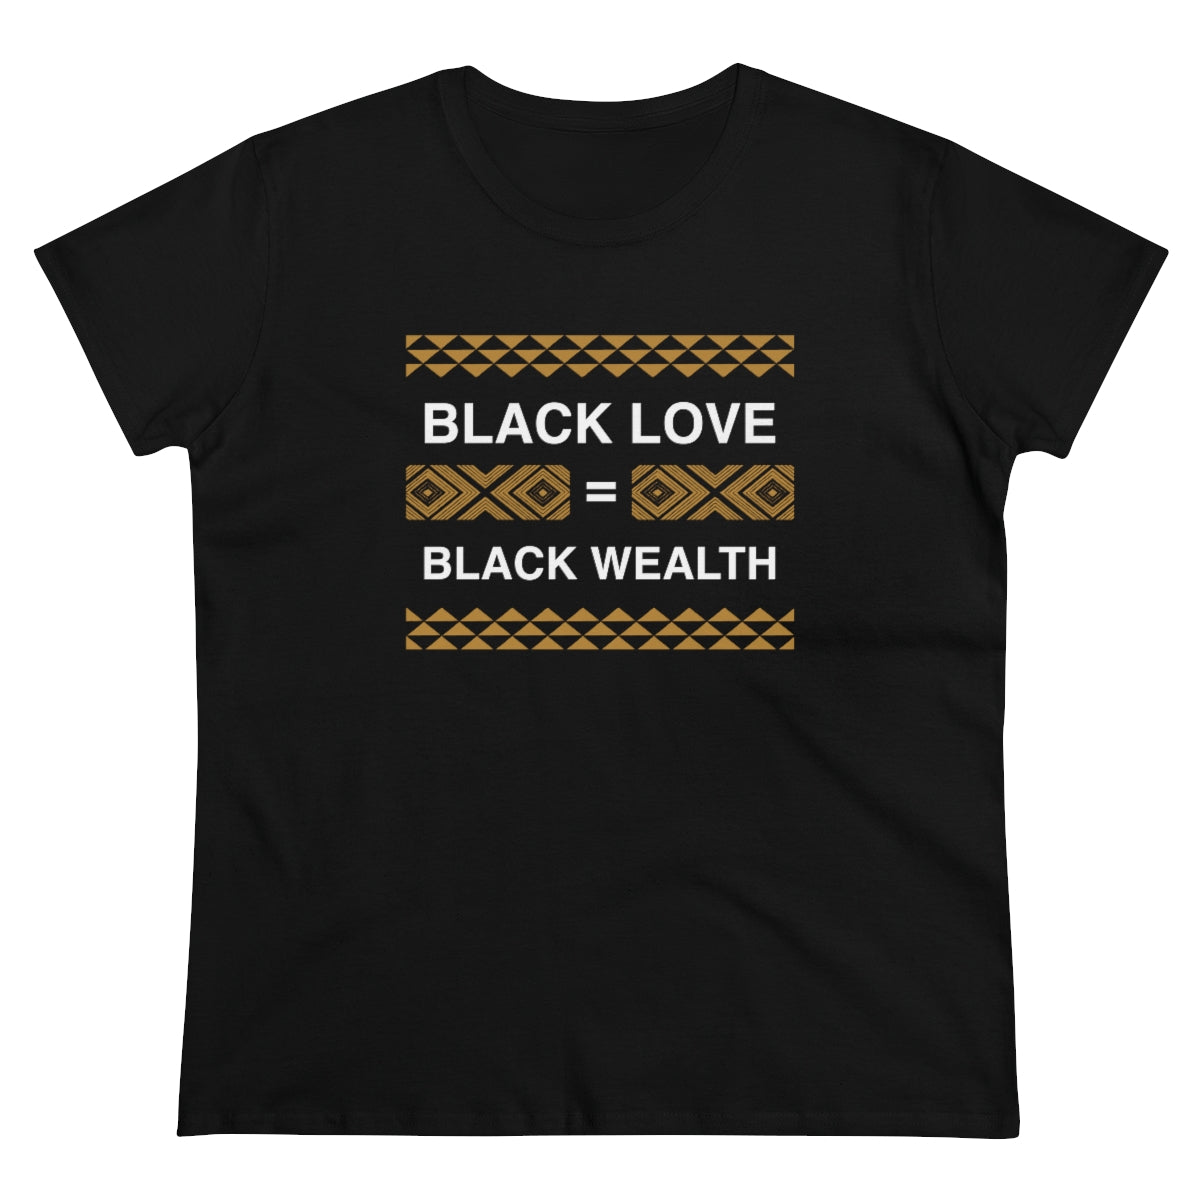 Black Love is Black Wealth - Women's Silhouette T-Shirt